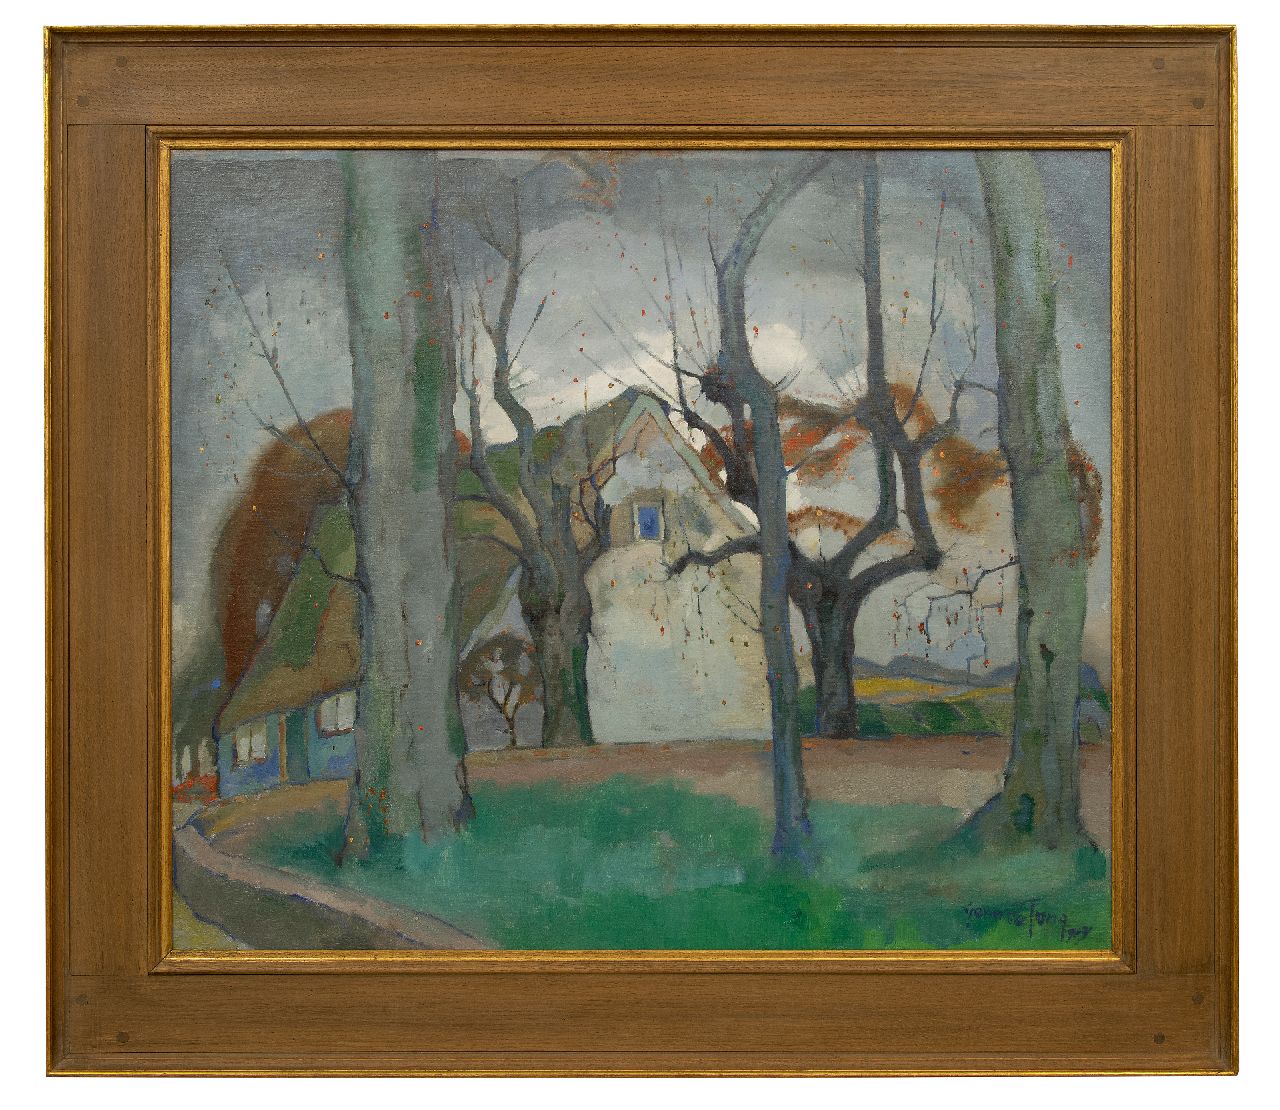 Jong G. de | Gerben 'Germ' de Jong | Schilderijen te koop aangeboden | Boerenhuis in de winter, olieverf op doek 85,8 x 100,7 cm, gesigneerd rechtsonder en gedateerd 1919